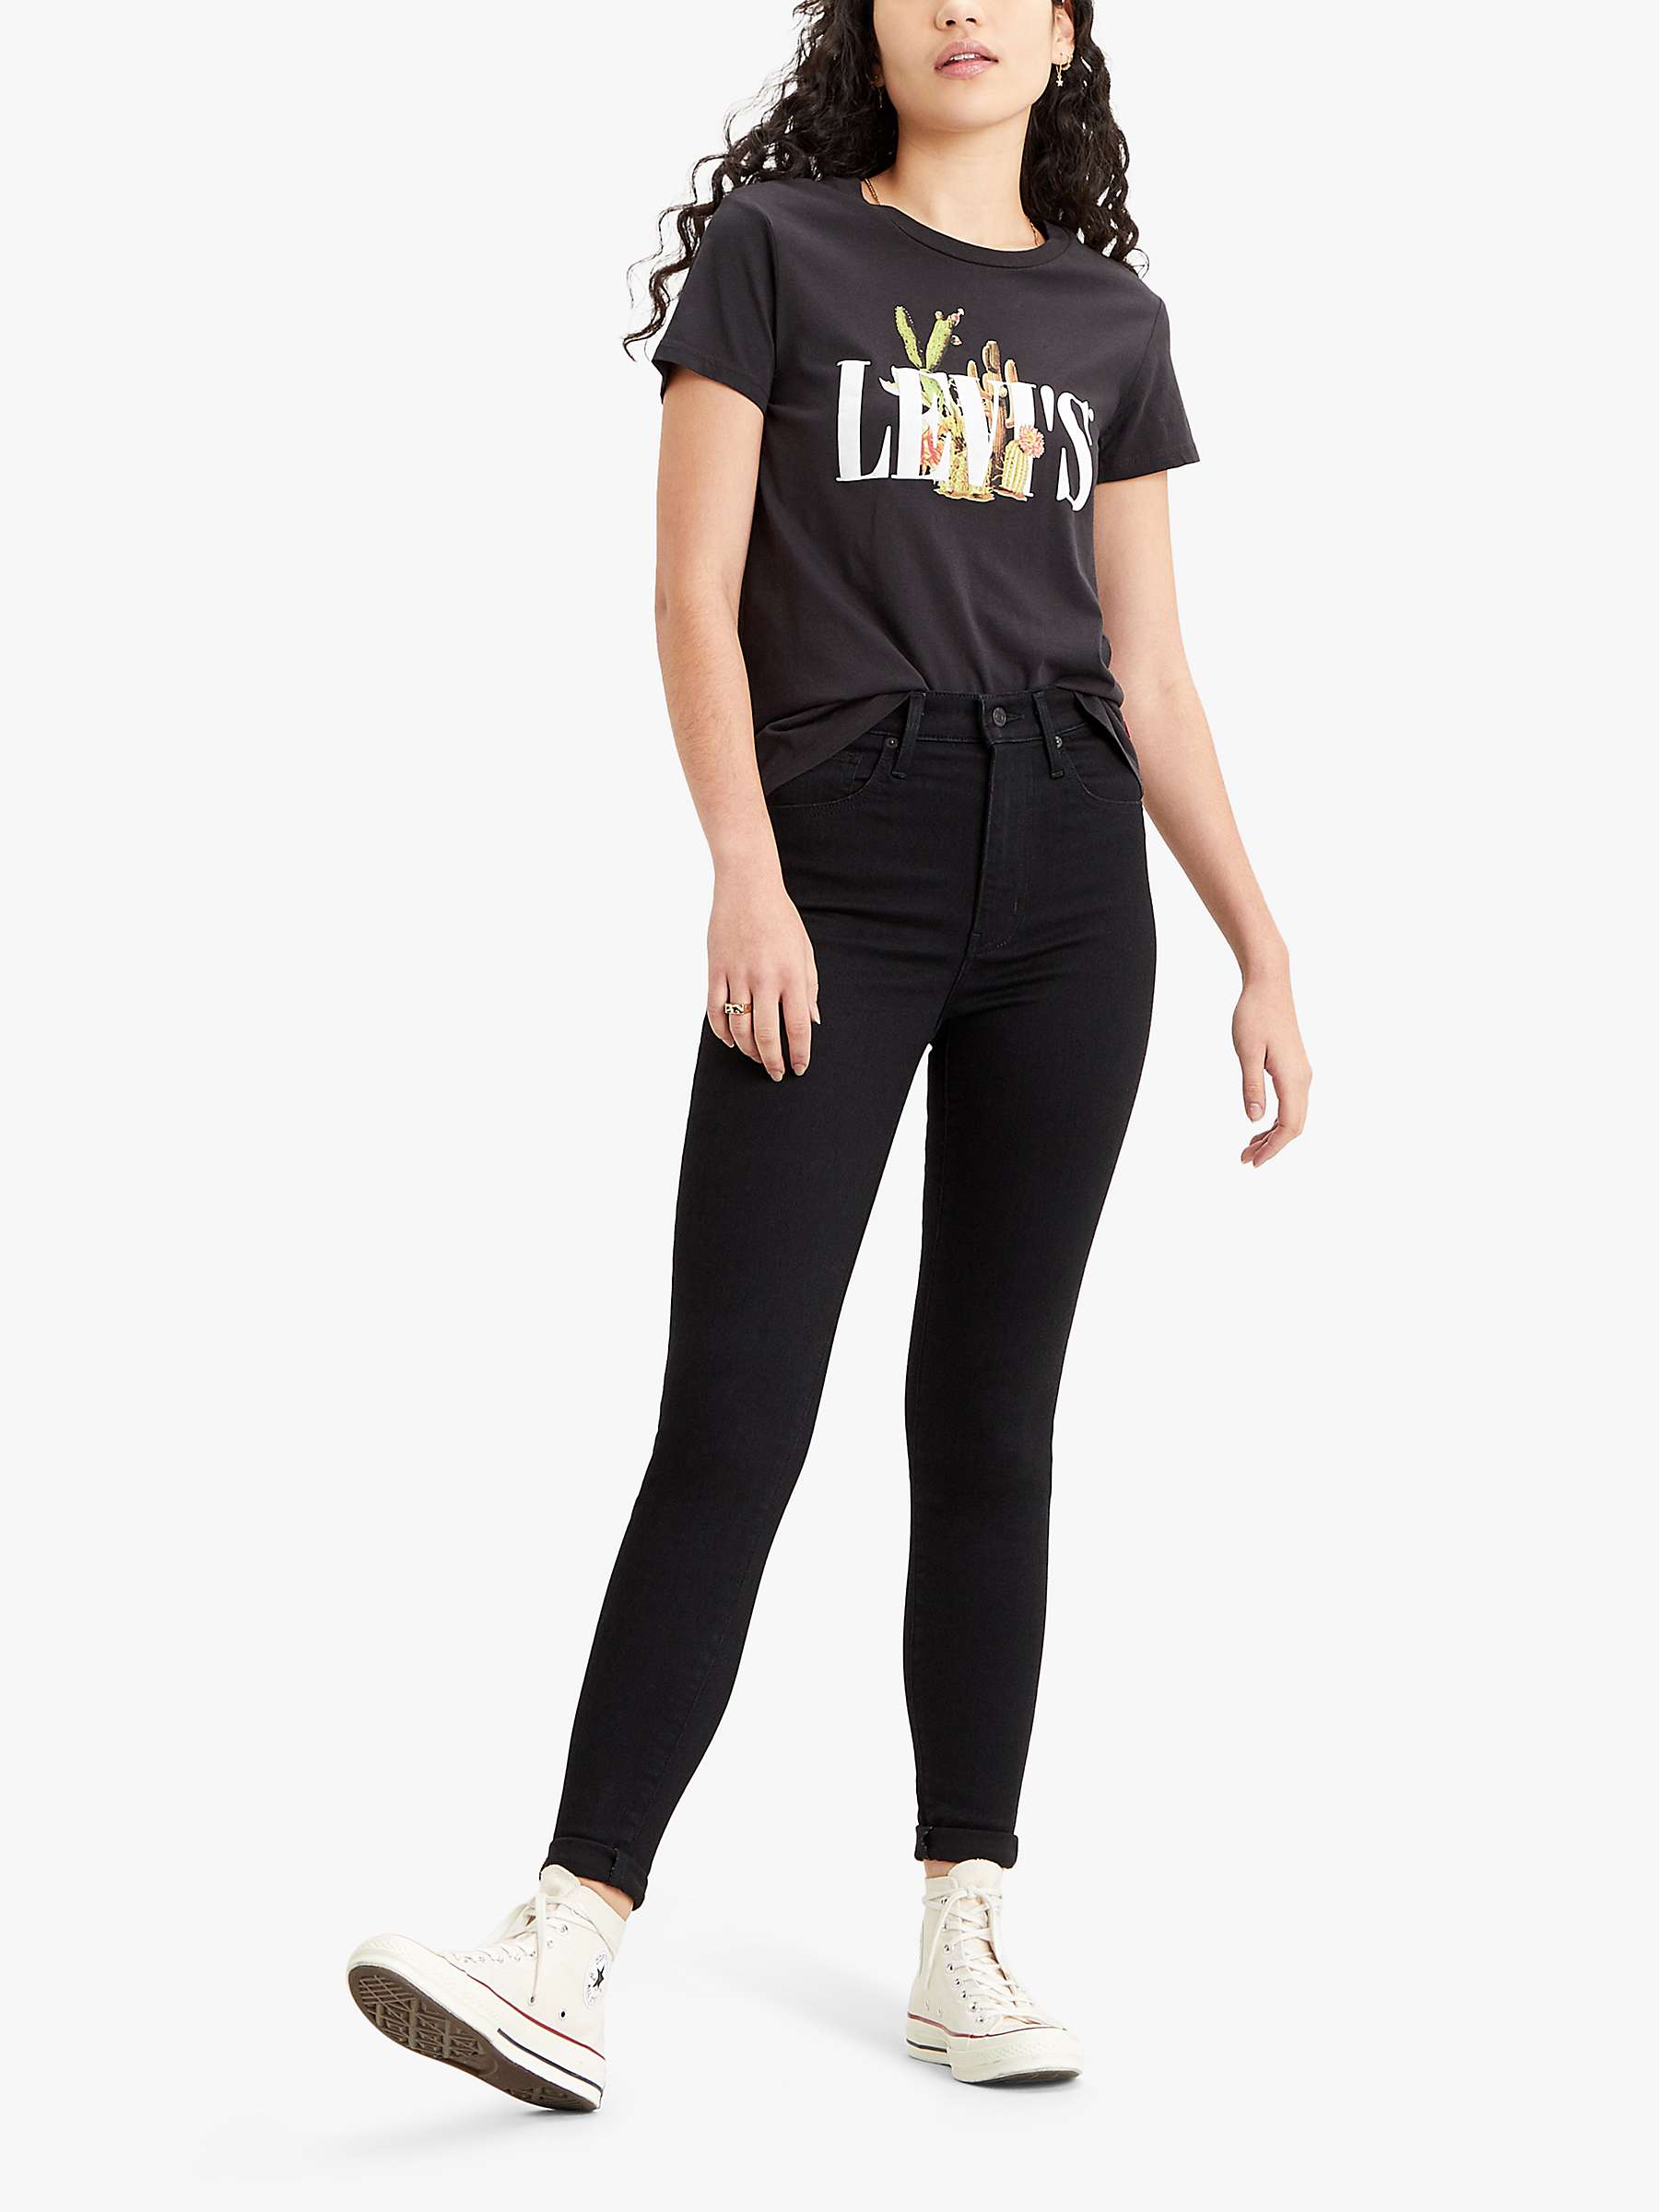 Buy Levi's Mile High Super Skinny Jeans, Black Celestial Online at johnlewis.com